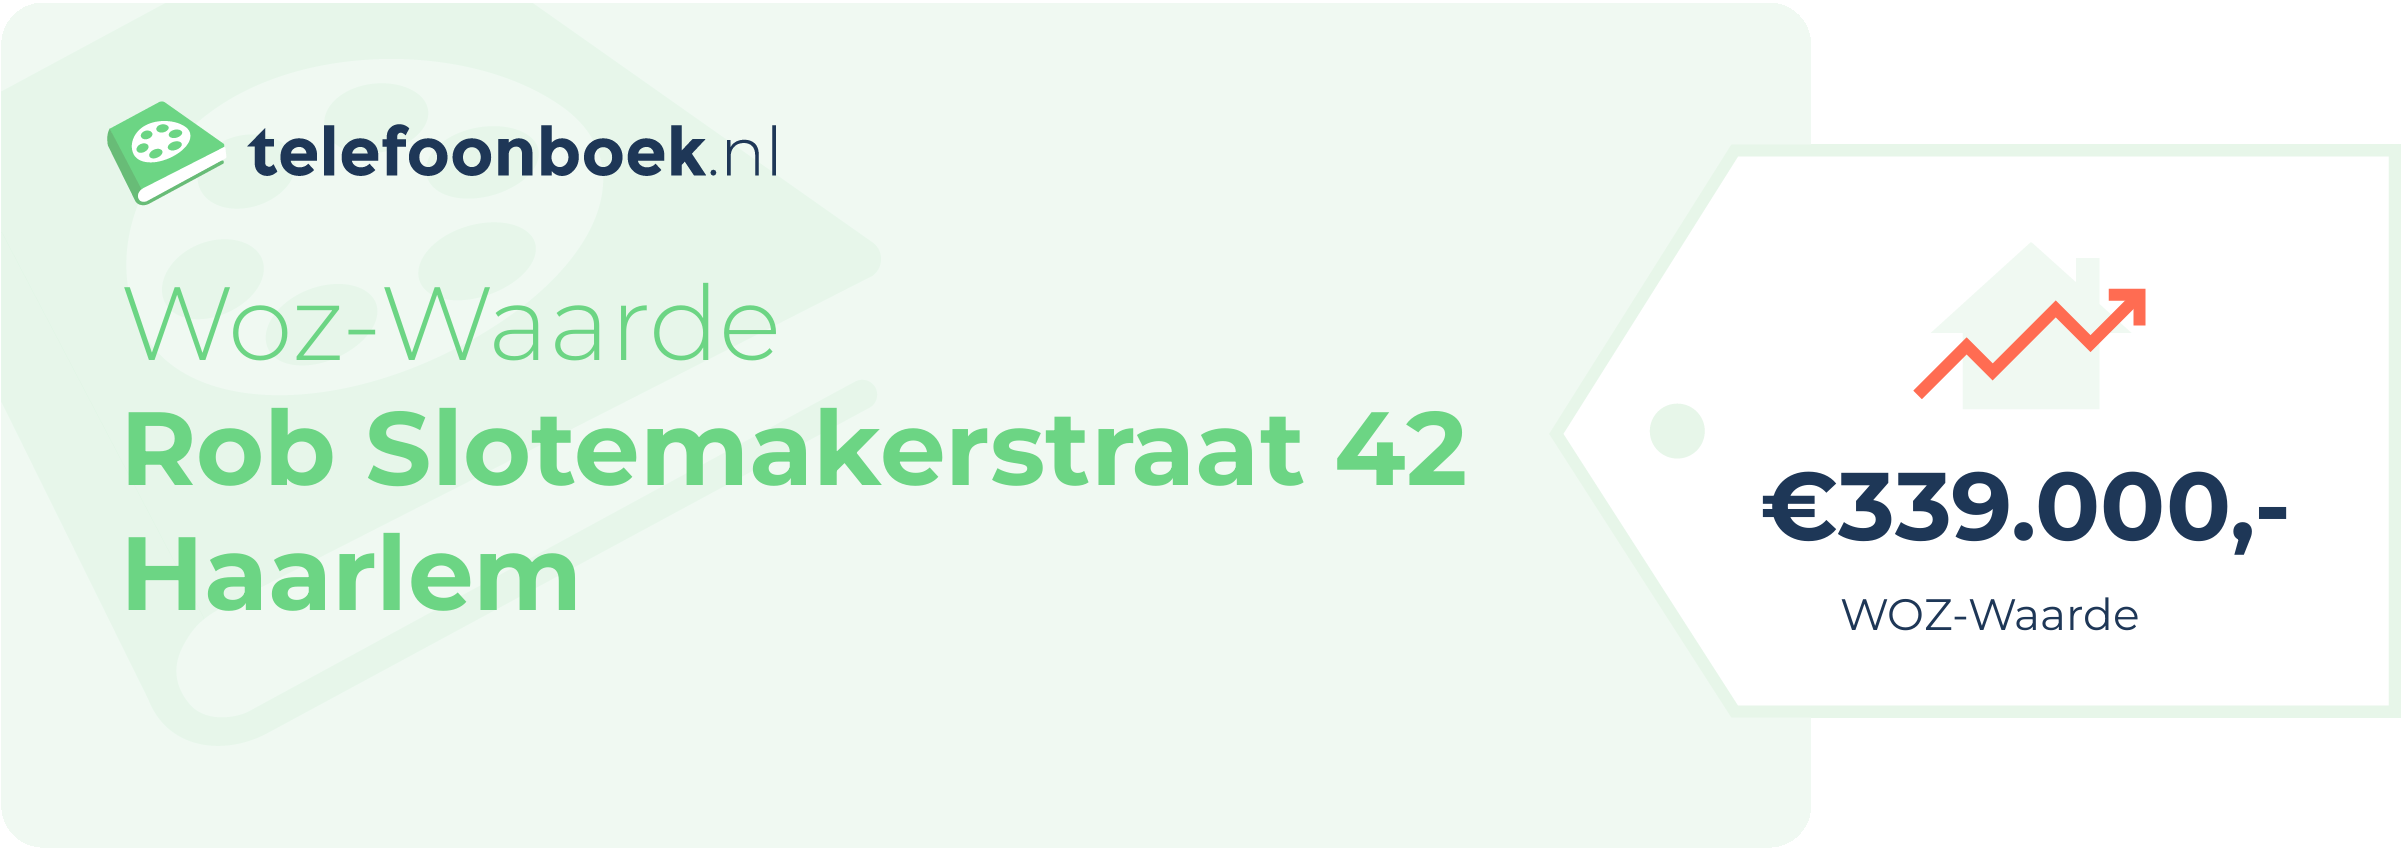 WOZ-waarde Rob Slotemakerstraat 42 Haarlem